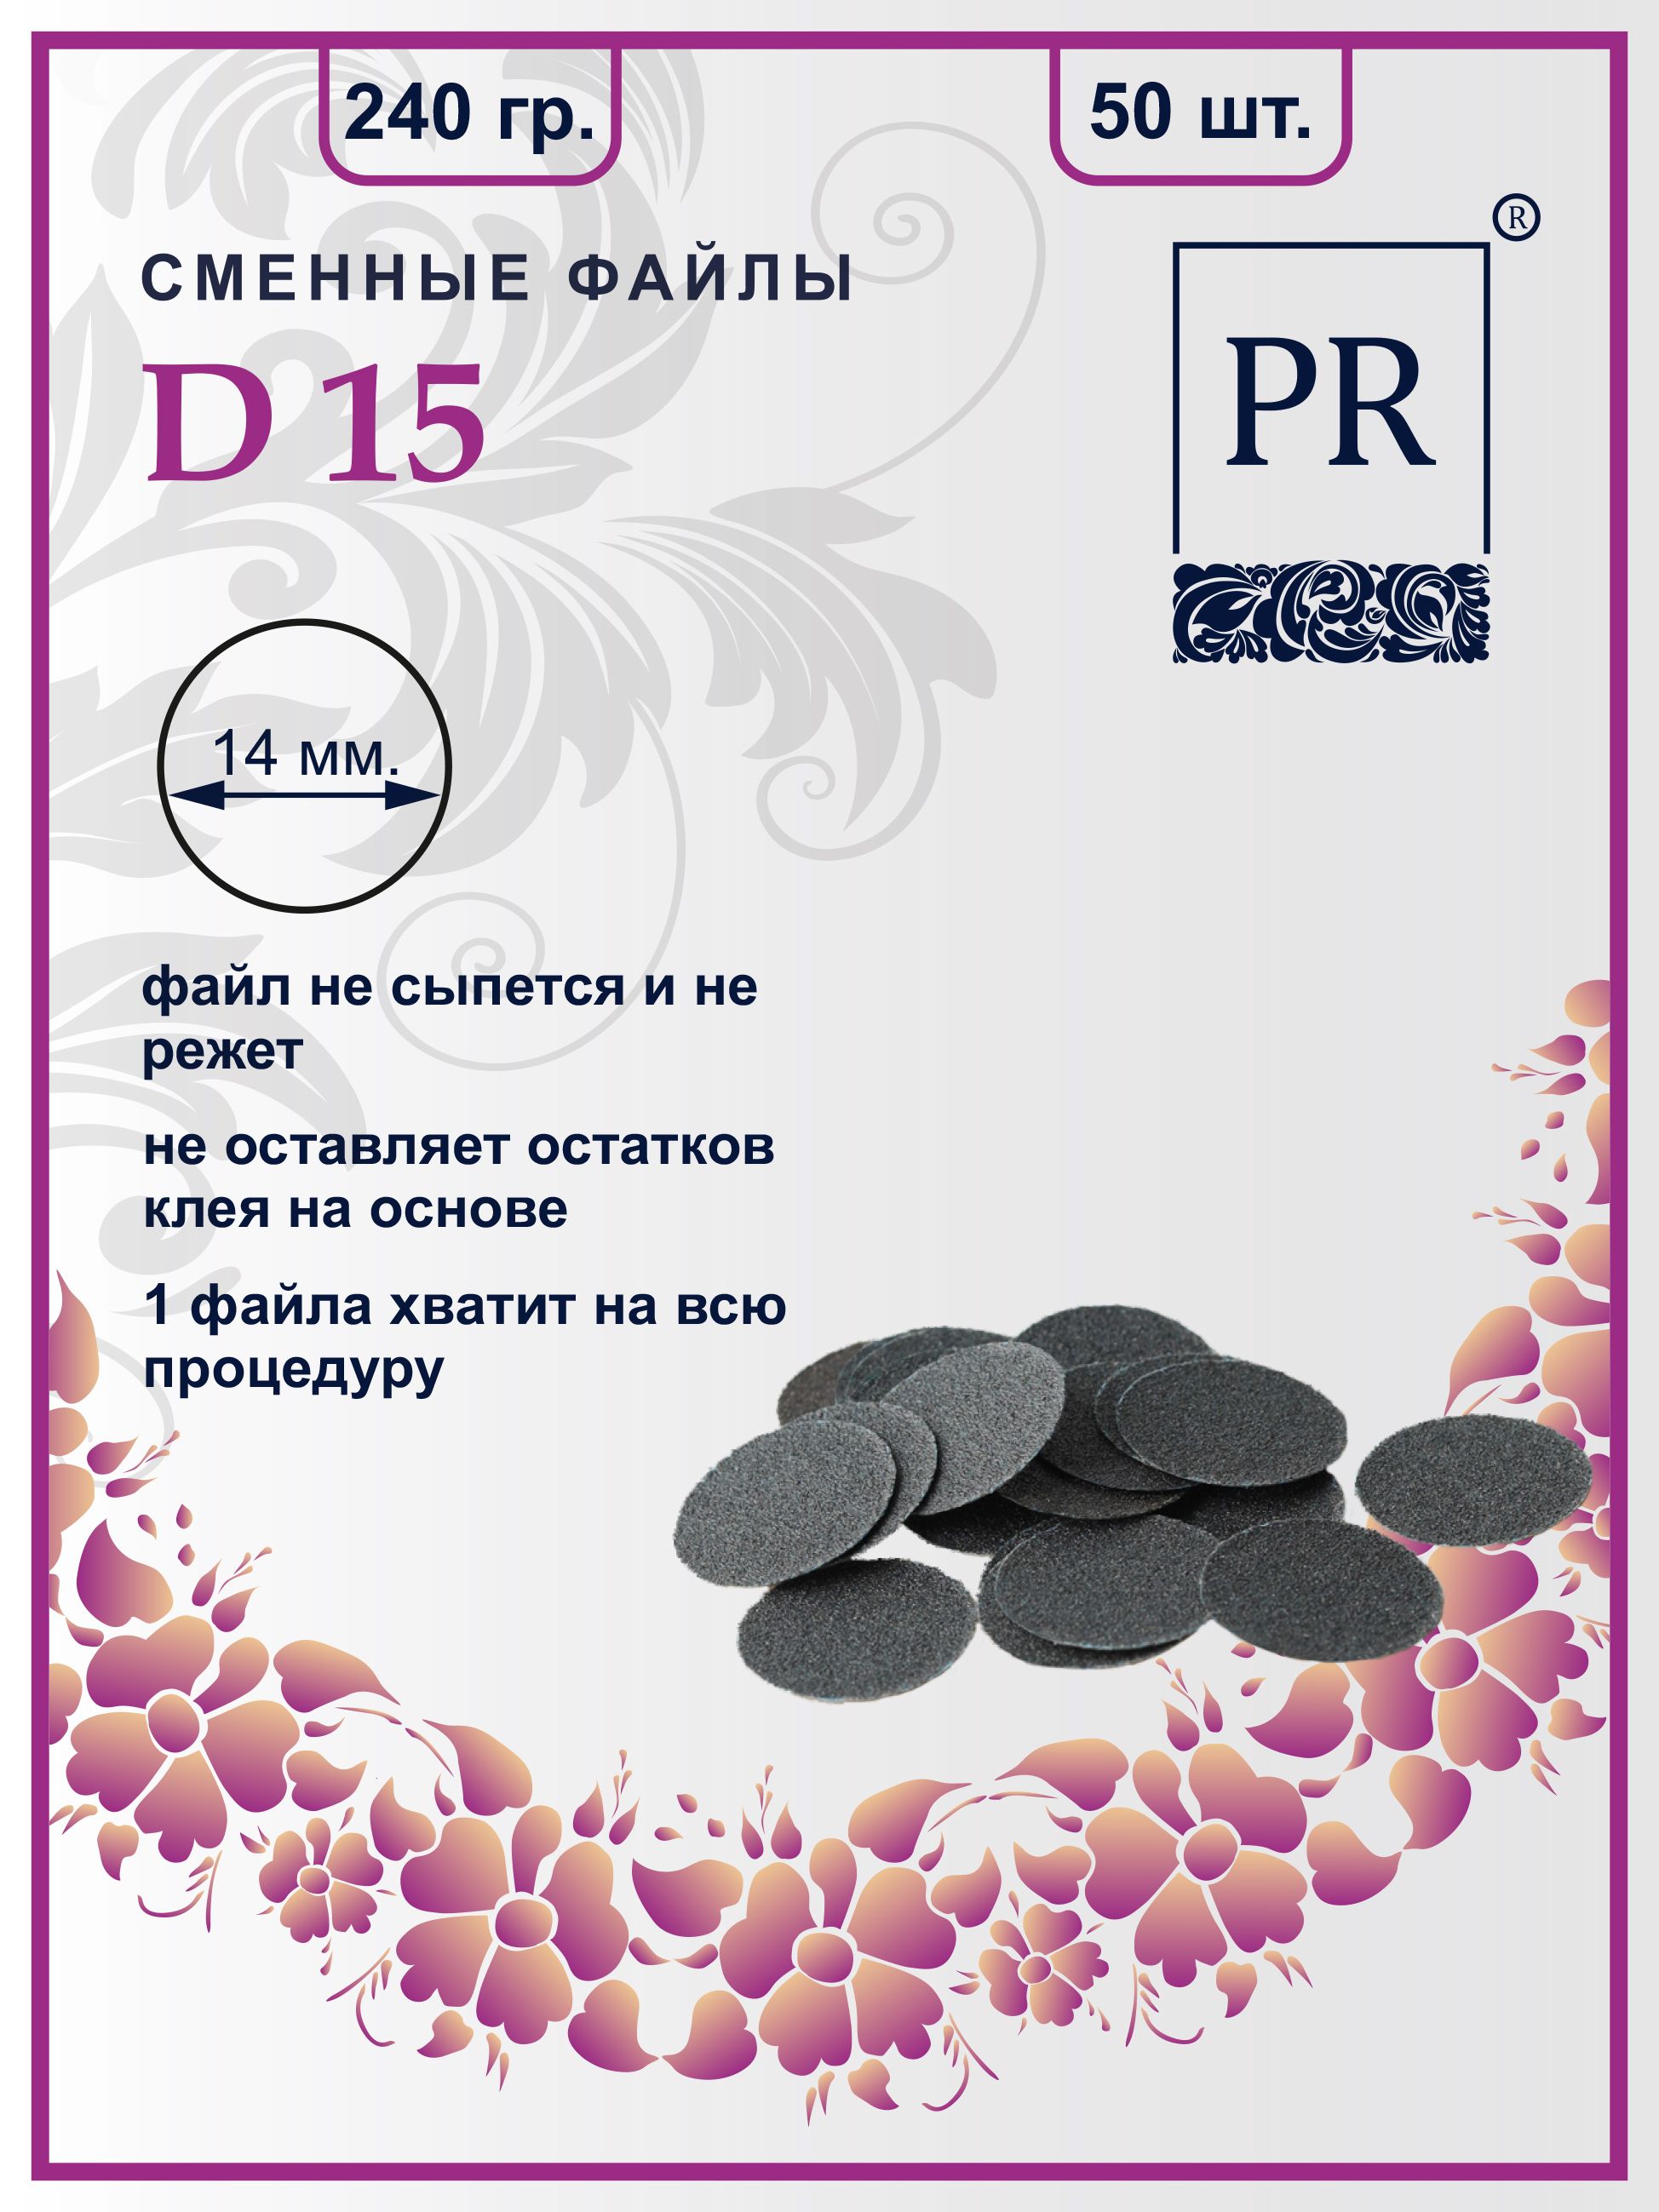 Сменные файлы Pilochki Russia диски для педикюра для диска S 240 грит 50 штук 60 штук заменяемая шлифовальная бумага шлифовальный диск инструмент для электрических файлов для ног rasp